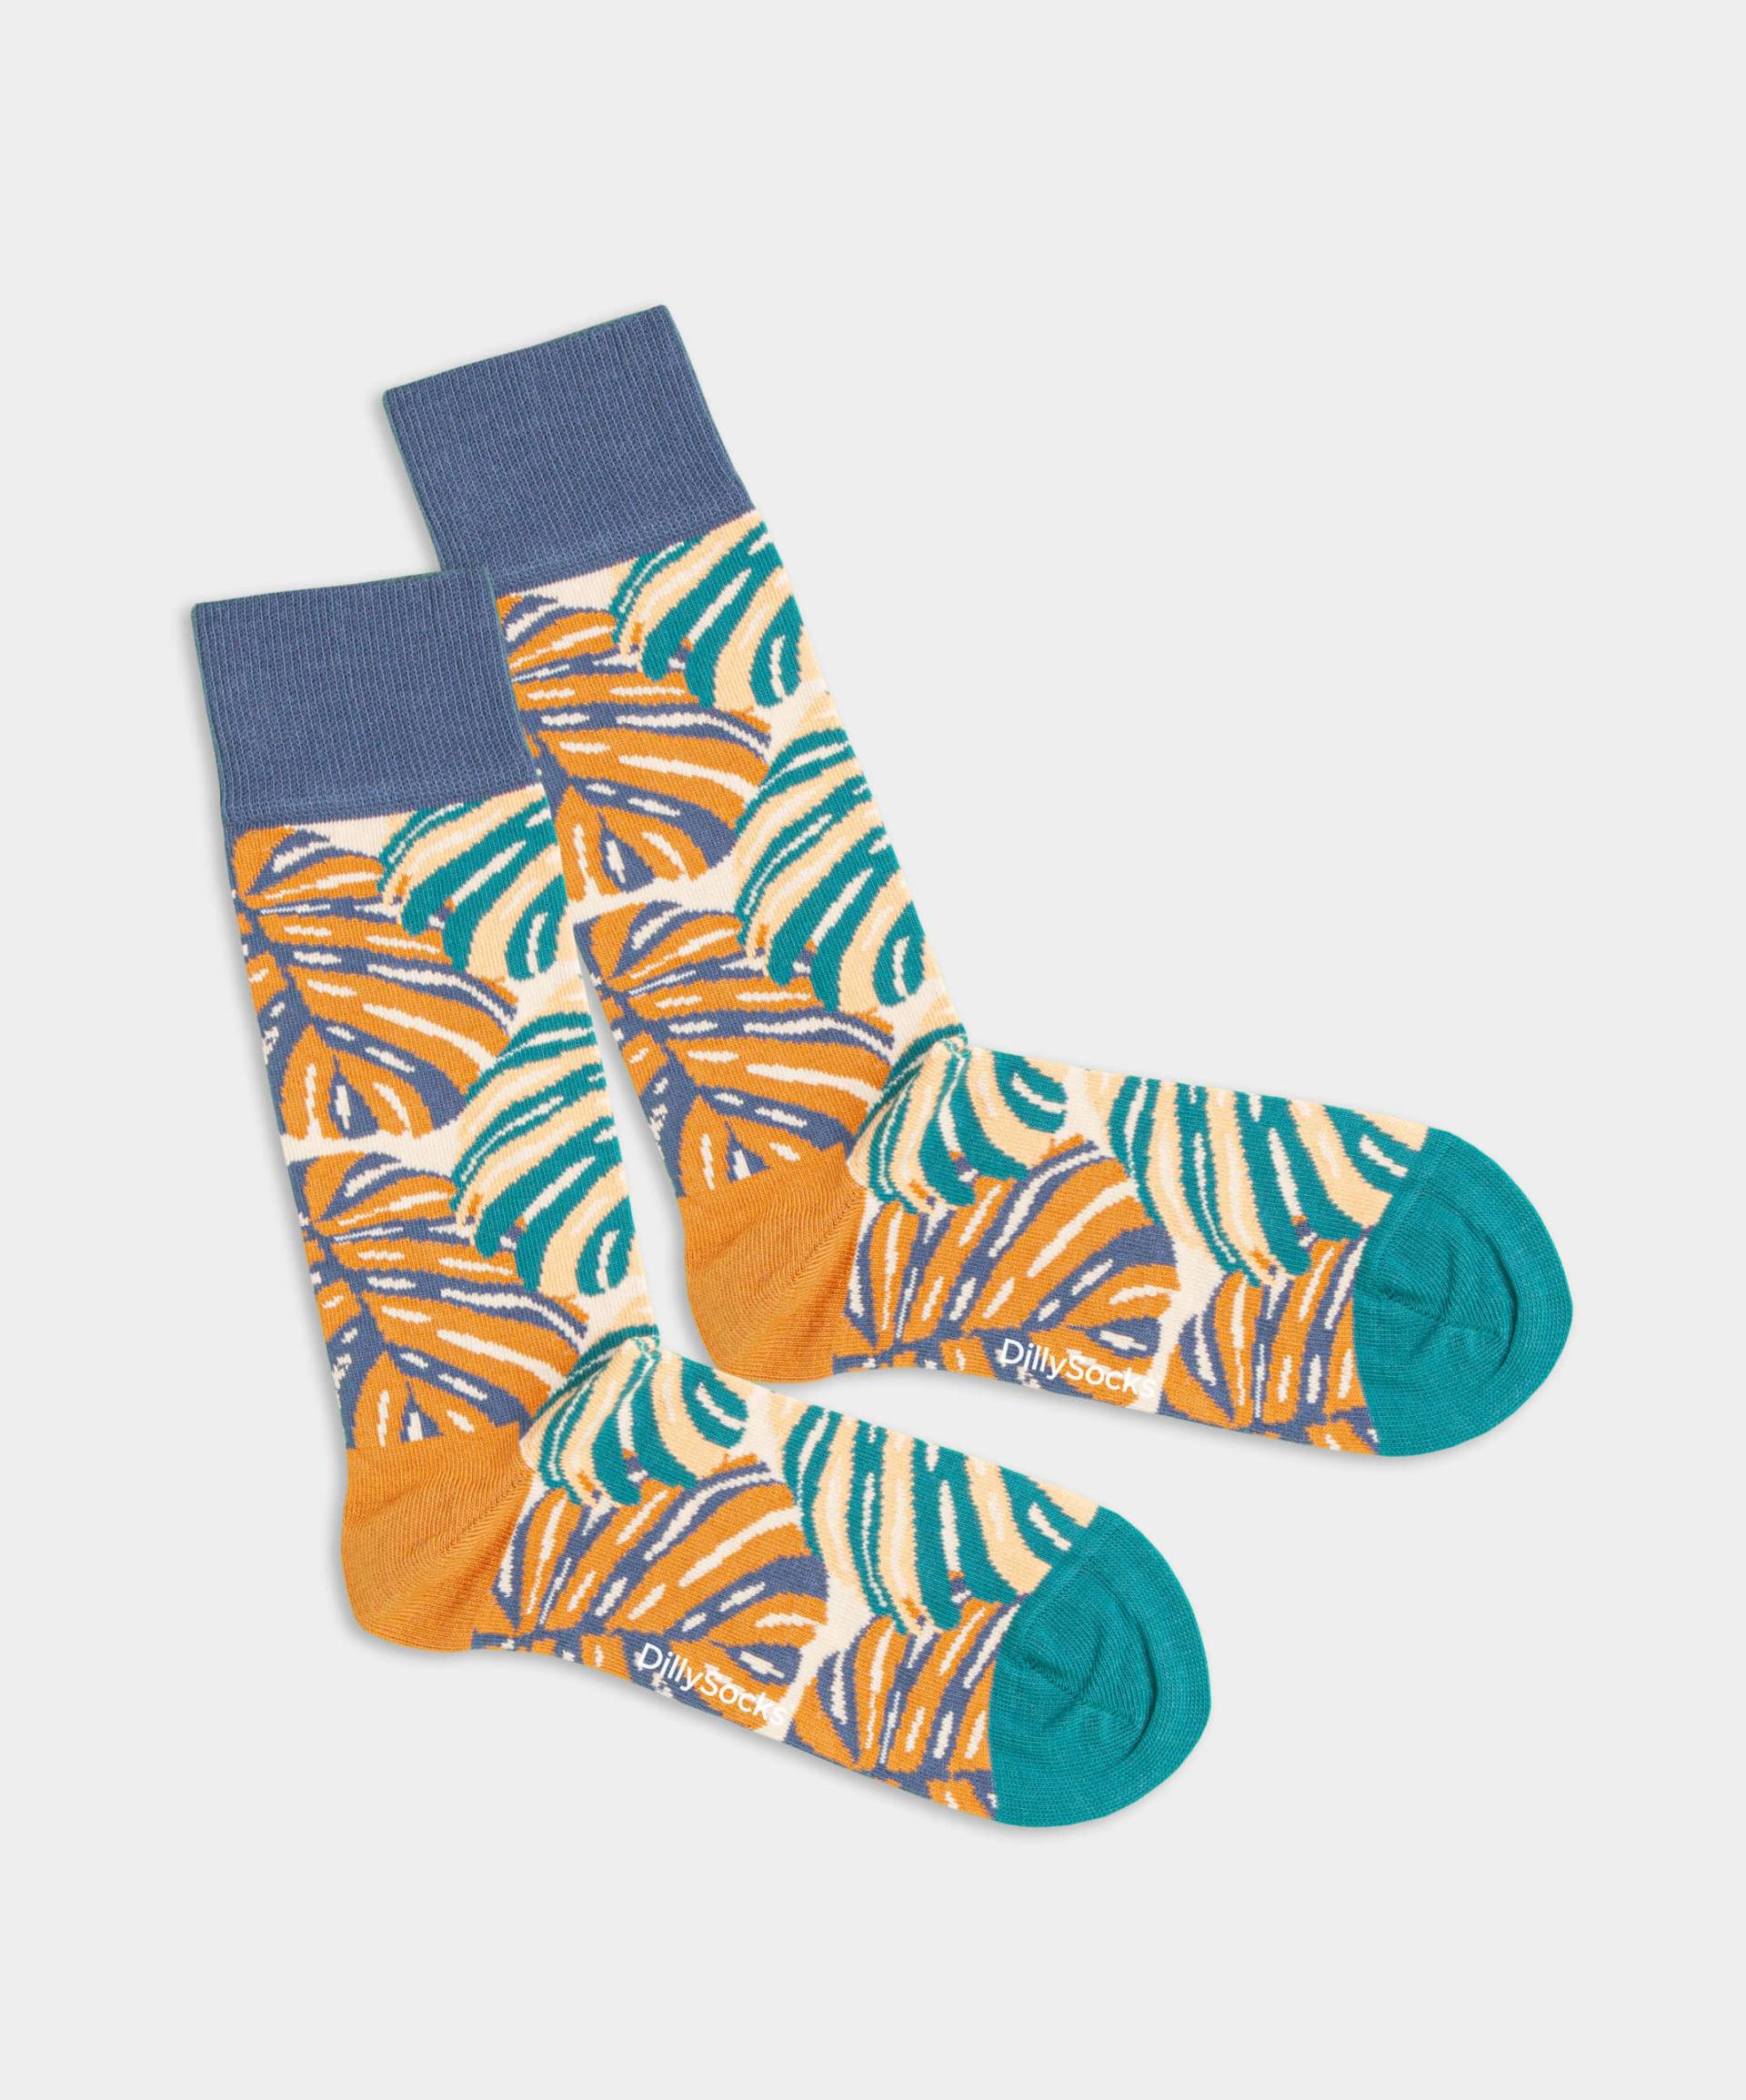 - Socken in Beige mit Blumen Motiv/Muster von DillySocks